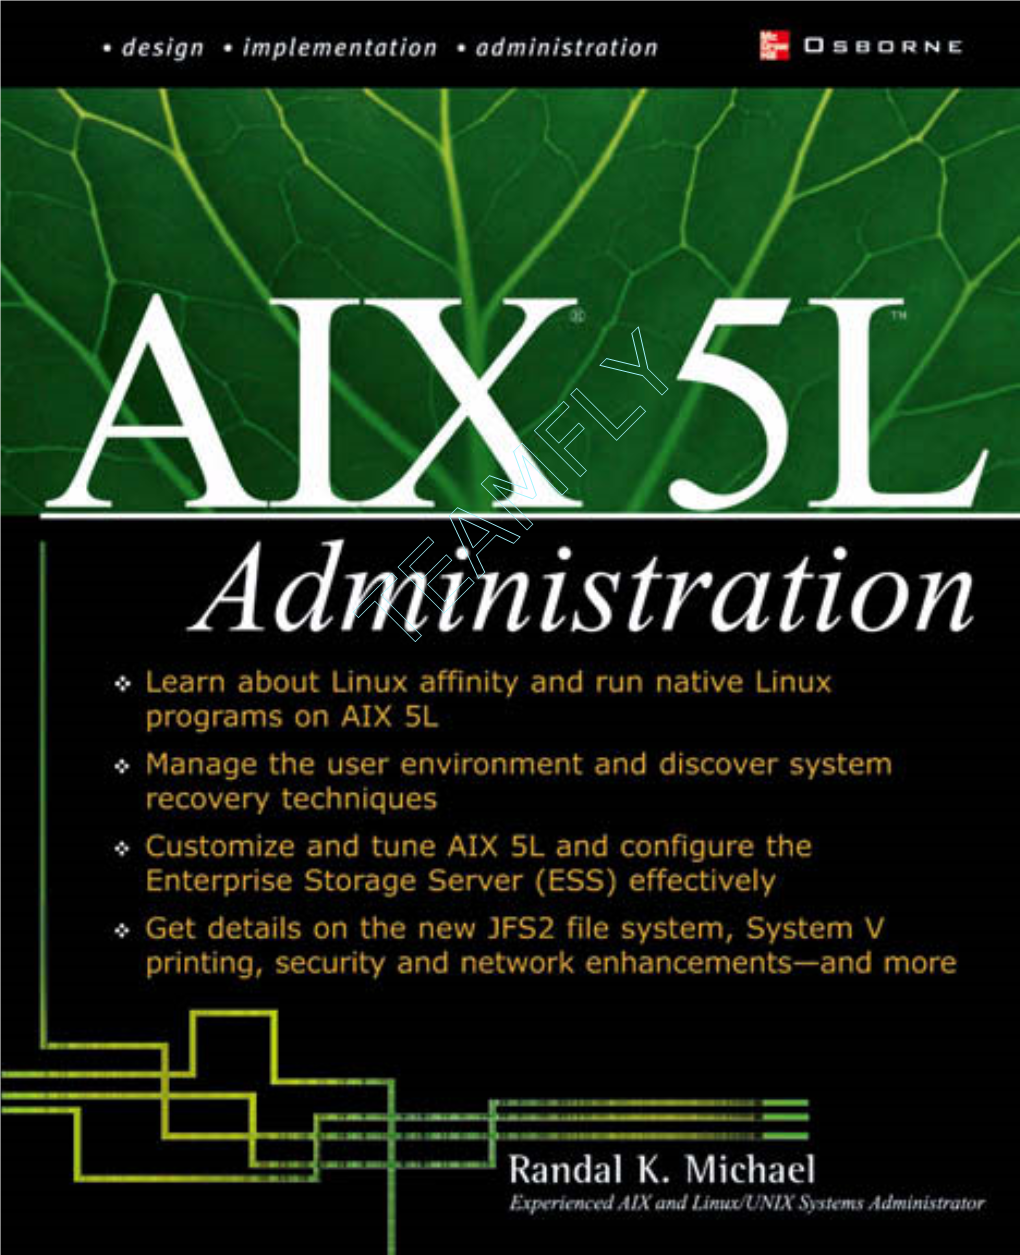 AIX® 5L Administration